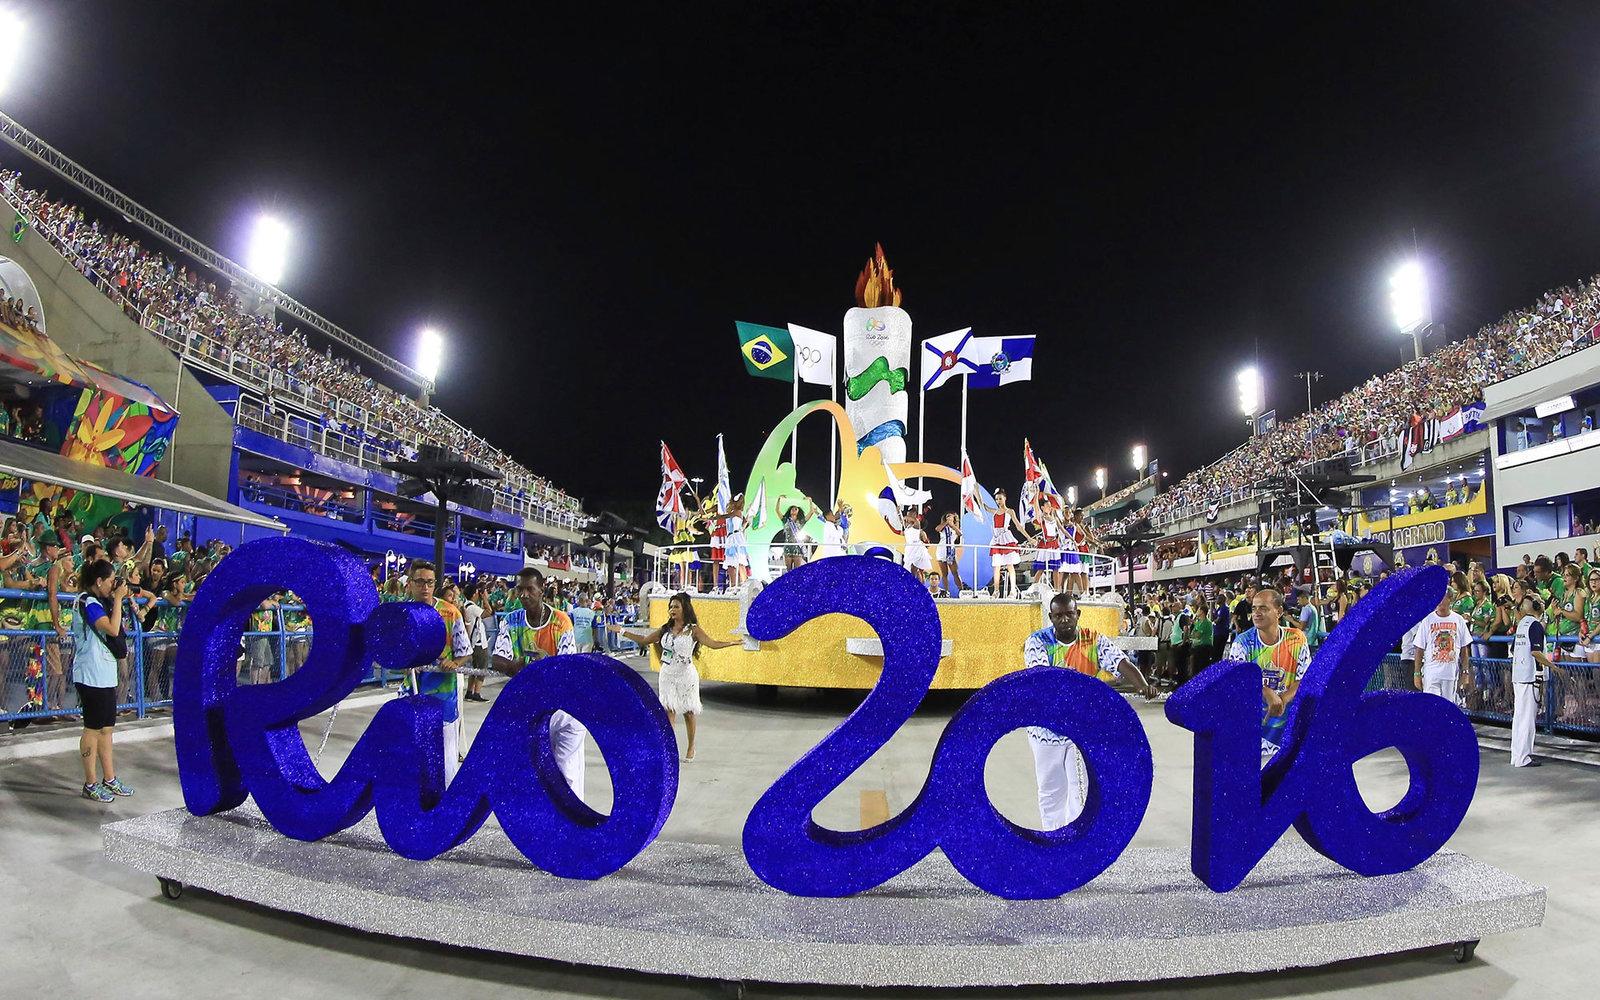 JO 2016: Ce premii vor primi pentru sportivii români care vor fi medaliaţi la Jocurile Olimpice? Sumele sunt fabuloase!